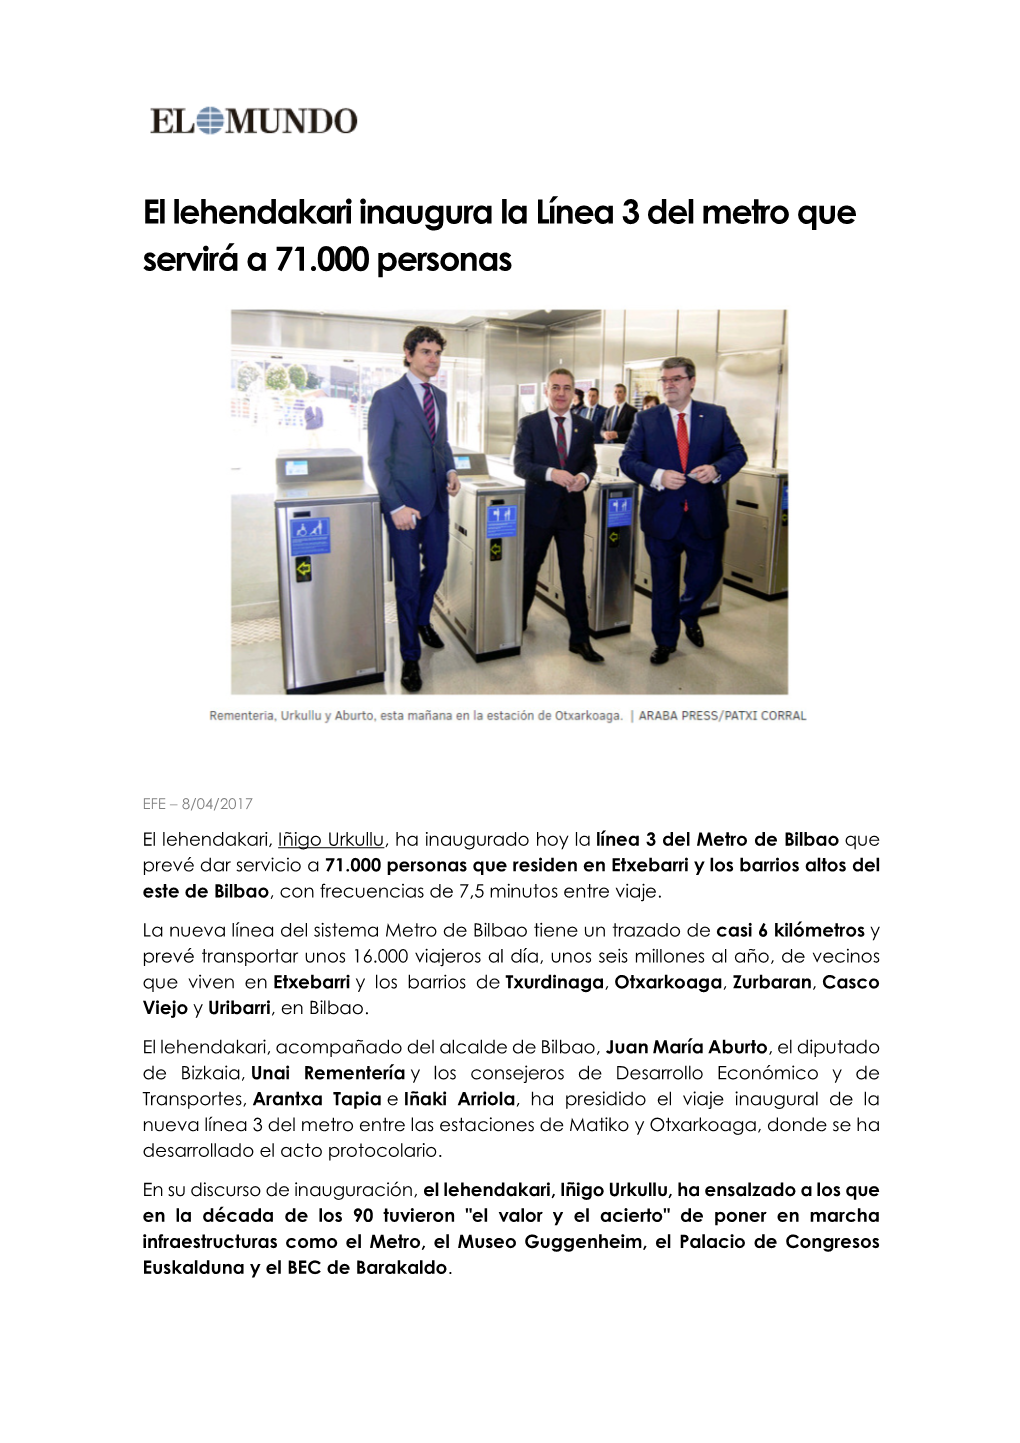 El Lehendakari Inaugura La Línea 3 Del Metro Que Servirá a 71.000 Personas